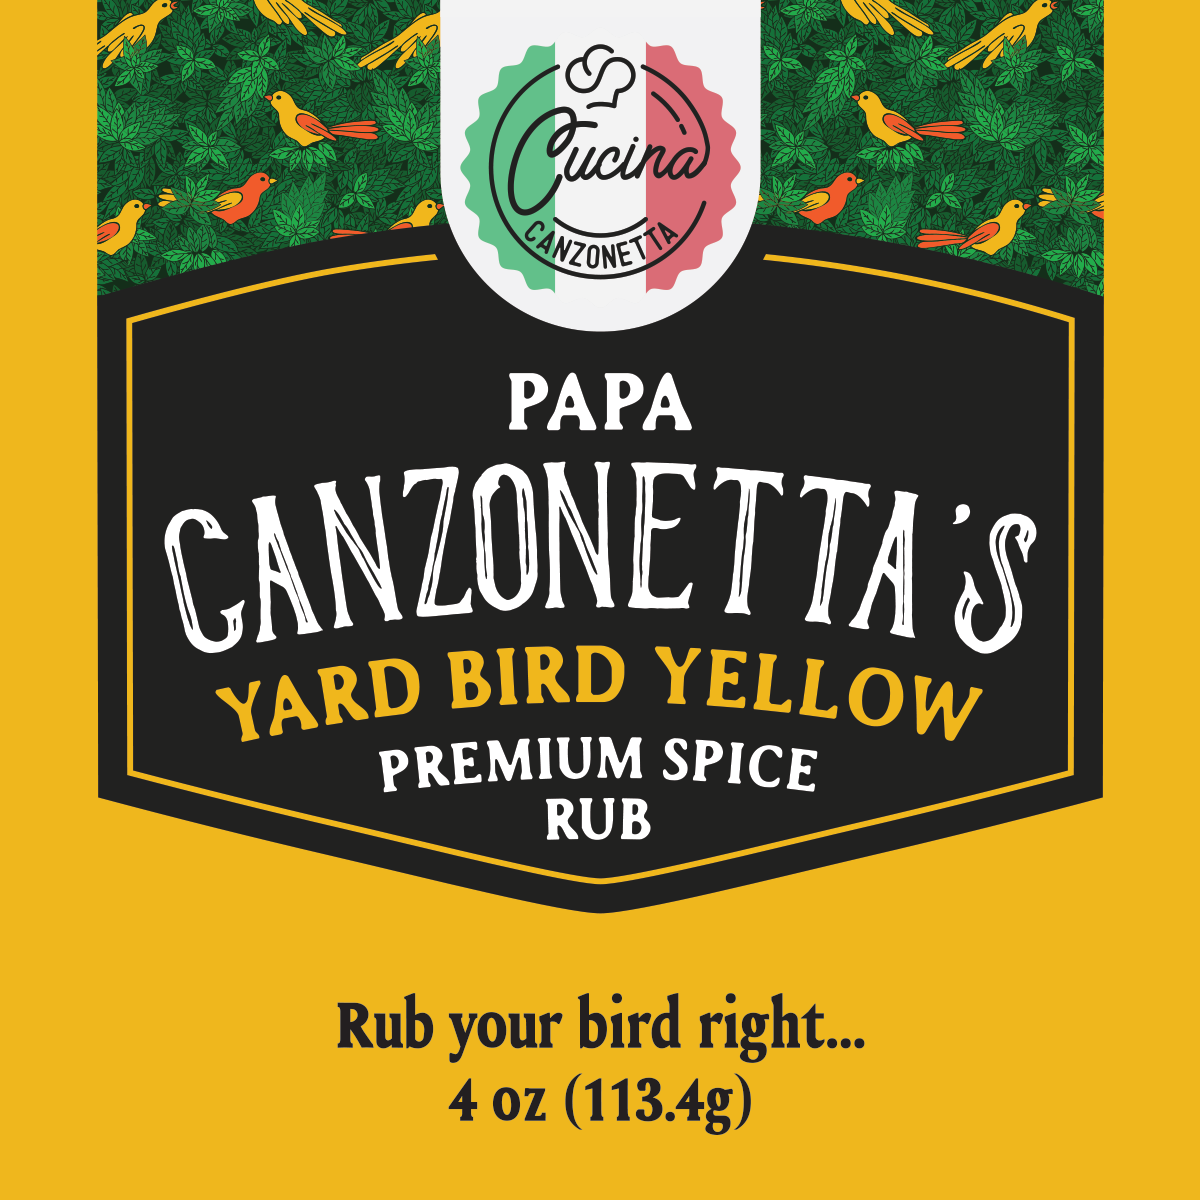 Yard Bird Yellow Premium Spice Rub (4 oz)